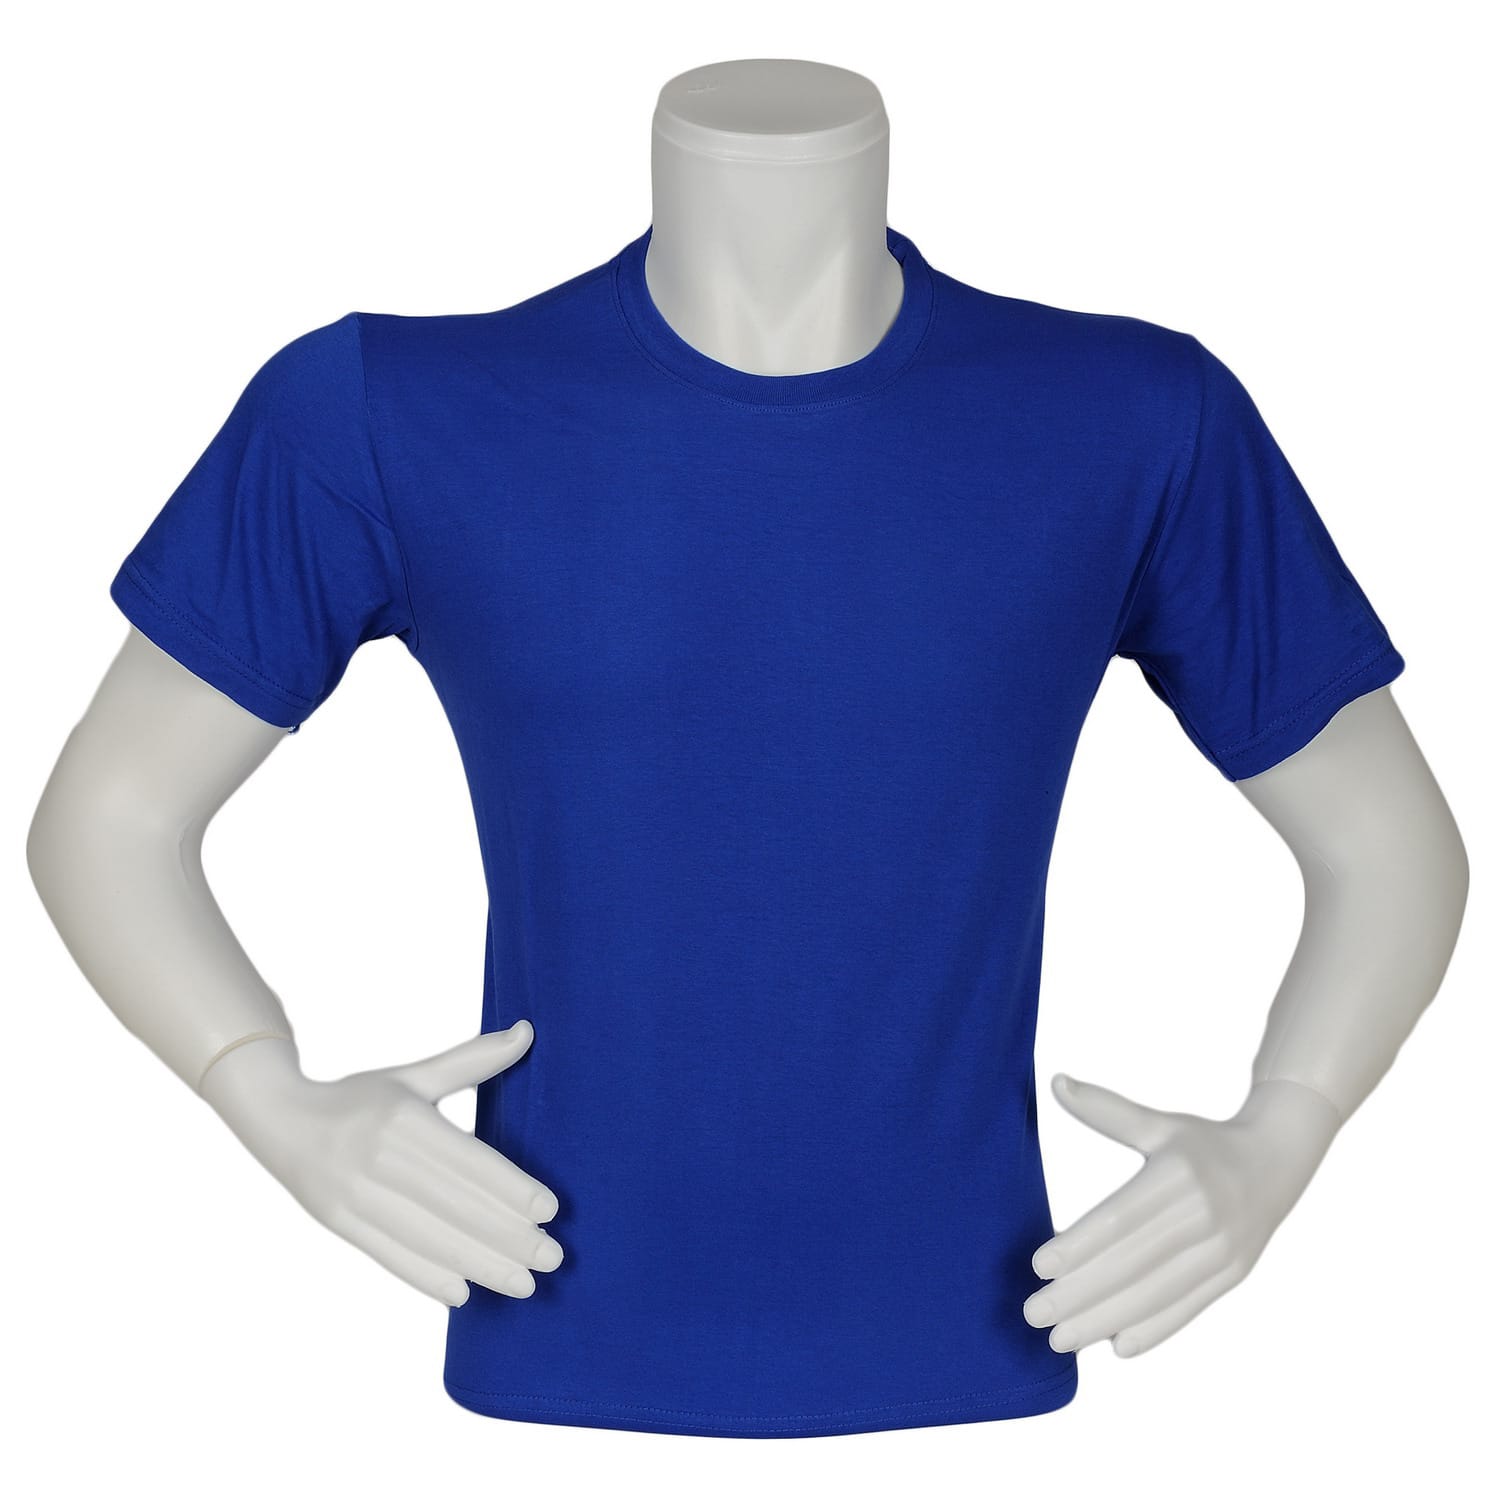 T-shirt Bisiklet Yaka Saks Mavi Renk